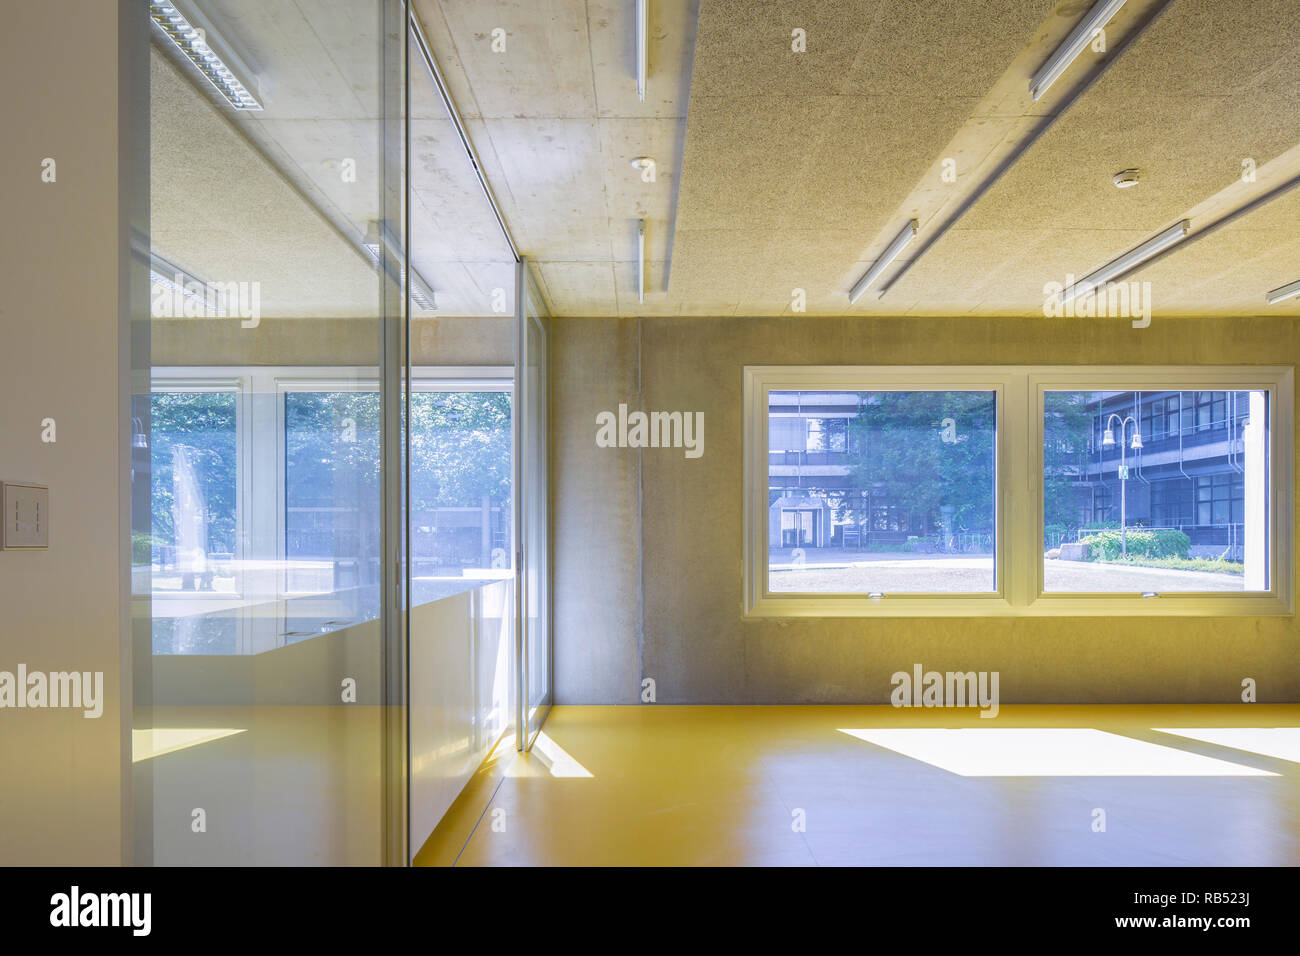 Area di ingresso al piano terra. Il Centro di ricerca informatica Università Stoccarda Vaihingen, Vaihingen, Germania. Architetto: hartwig schneider architek Foto Stock